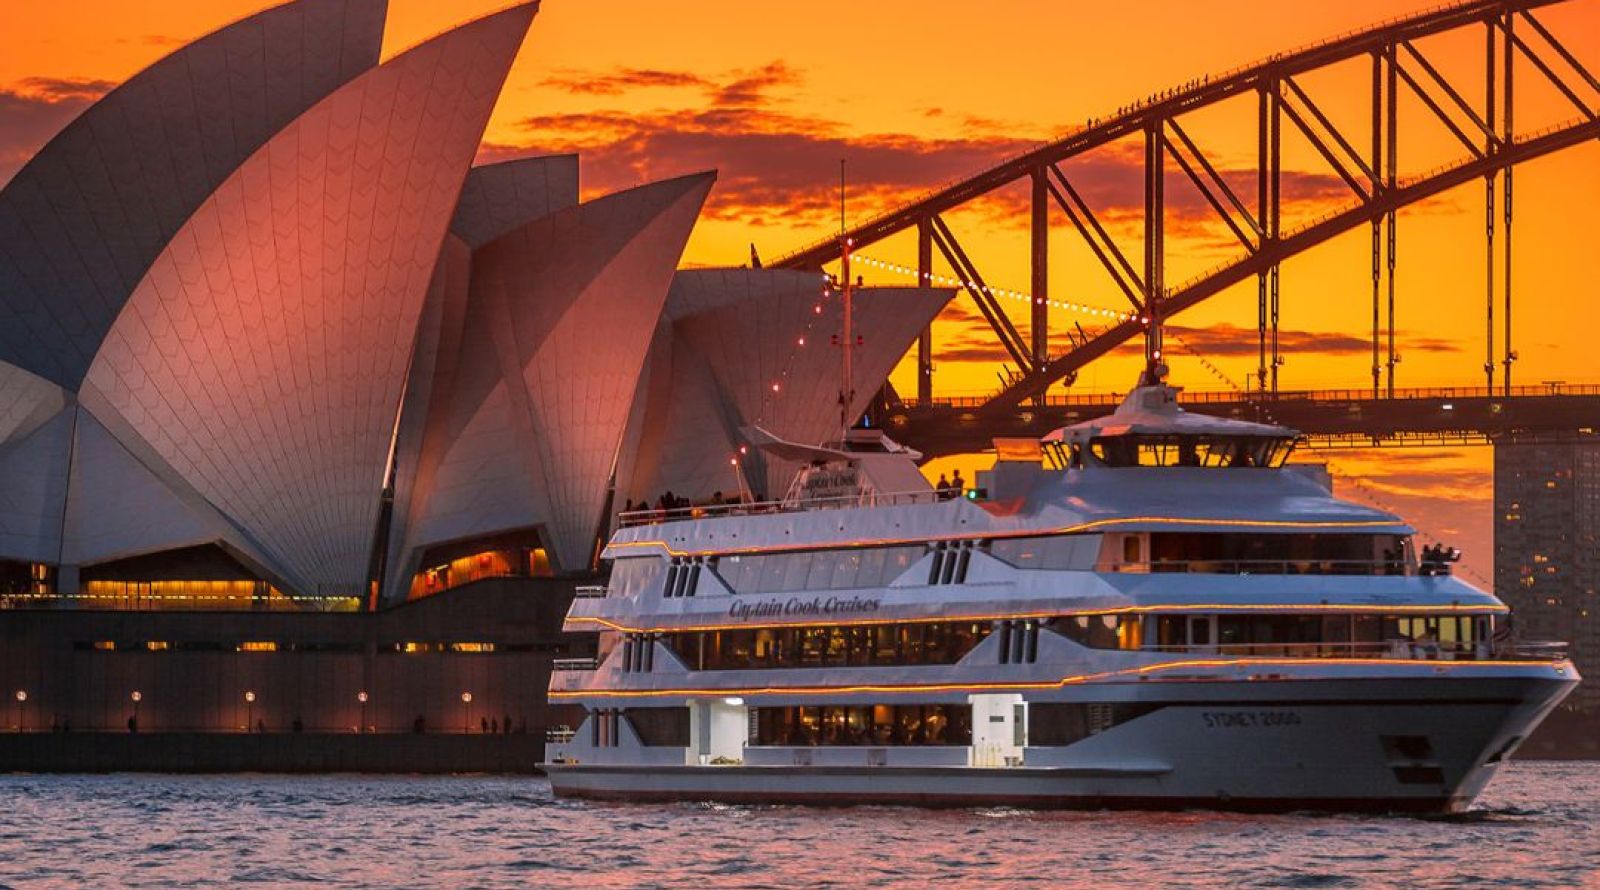 Sydney 2000 - NYE Sydney Harbour cruise